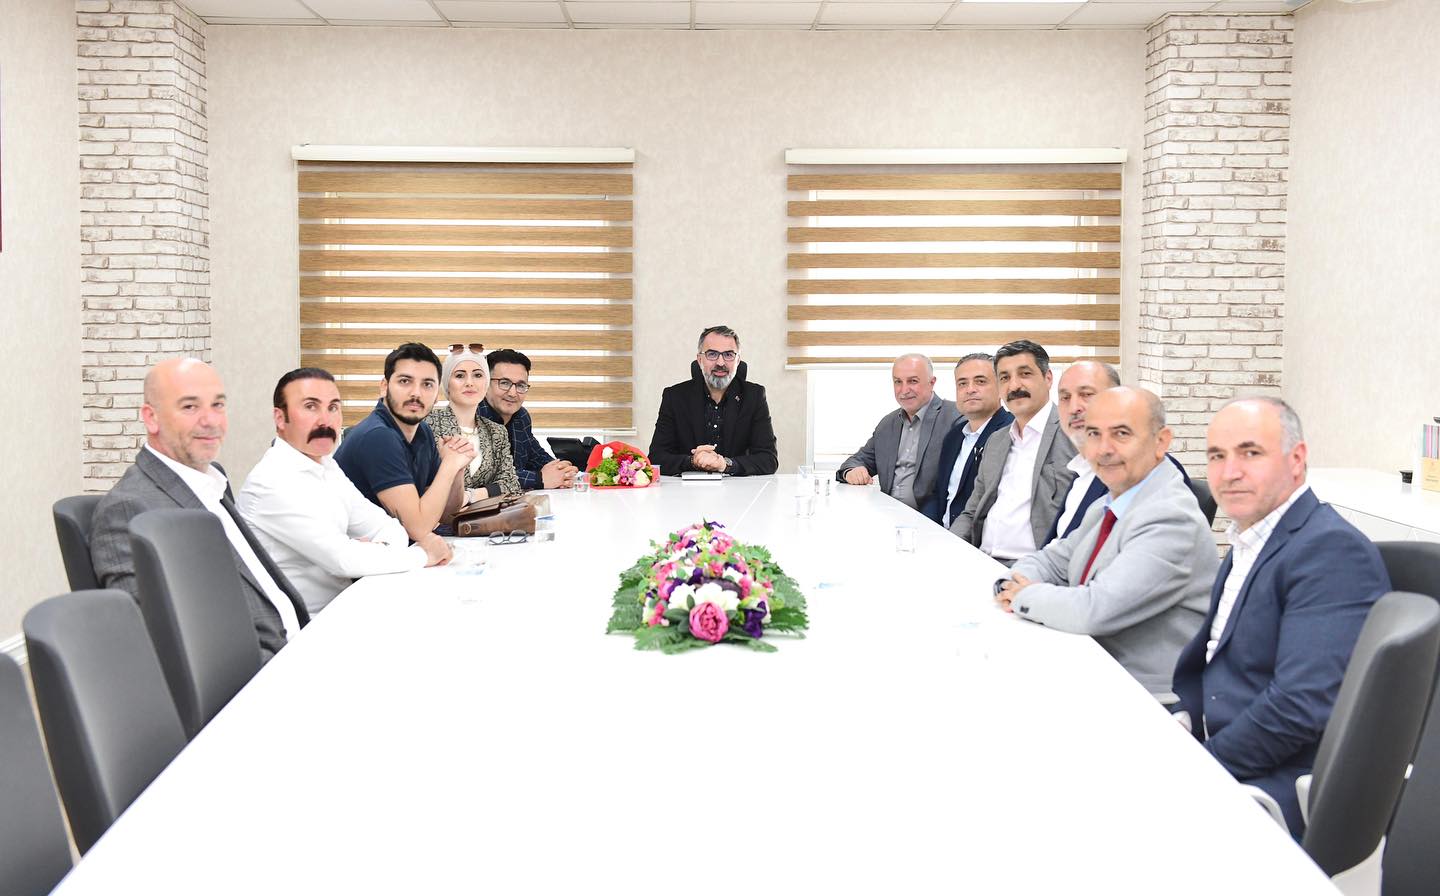 Bursa Sivaslılar Yardımlaşma ve Dayanışma Derneği'nden Belediye Başkanı'na Ziyaret